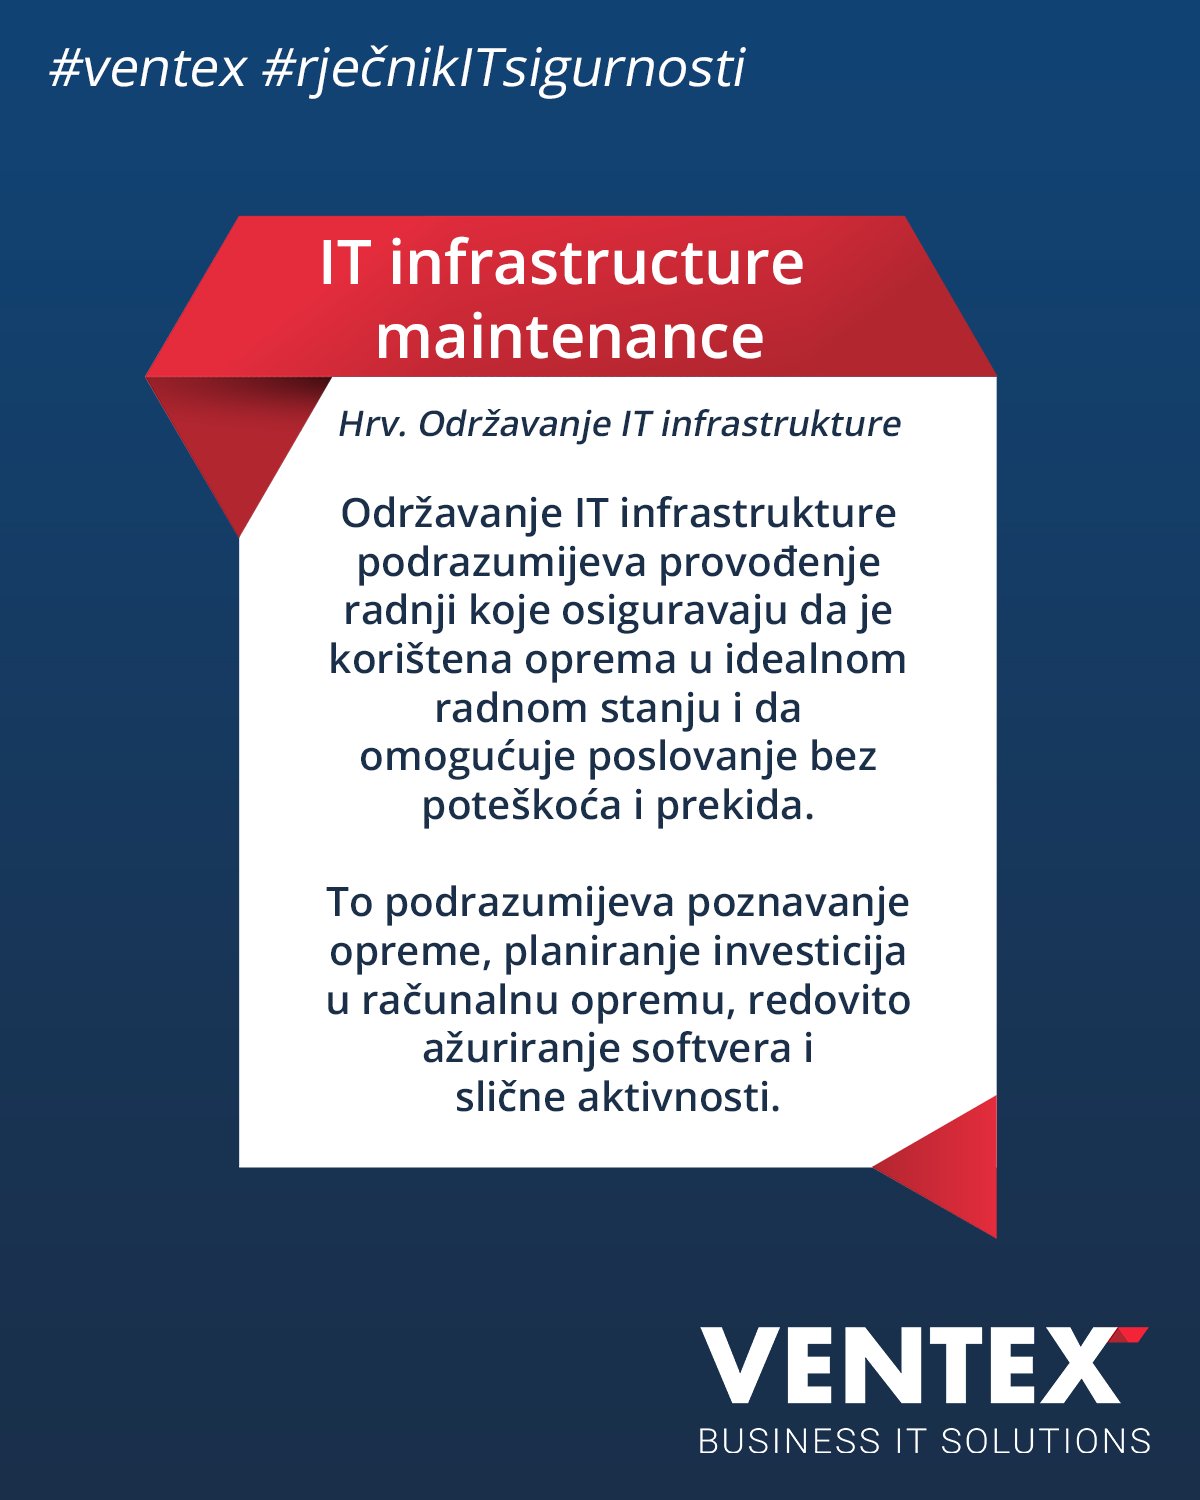 Objašnjenje pojma iz Rječnika IT sigurnosti - Održavanje IT infrastrukture